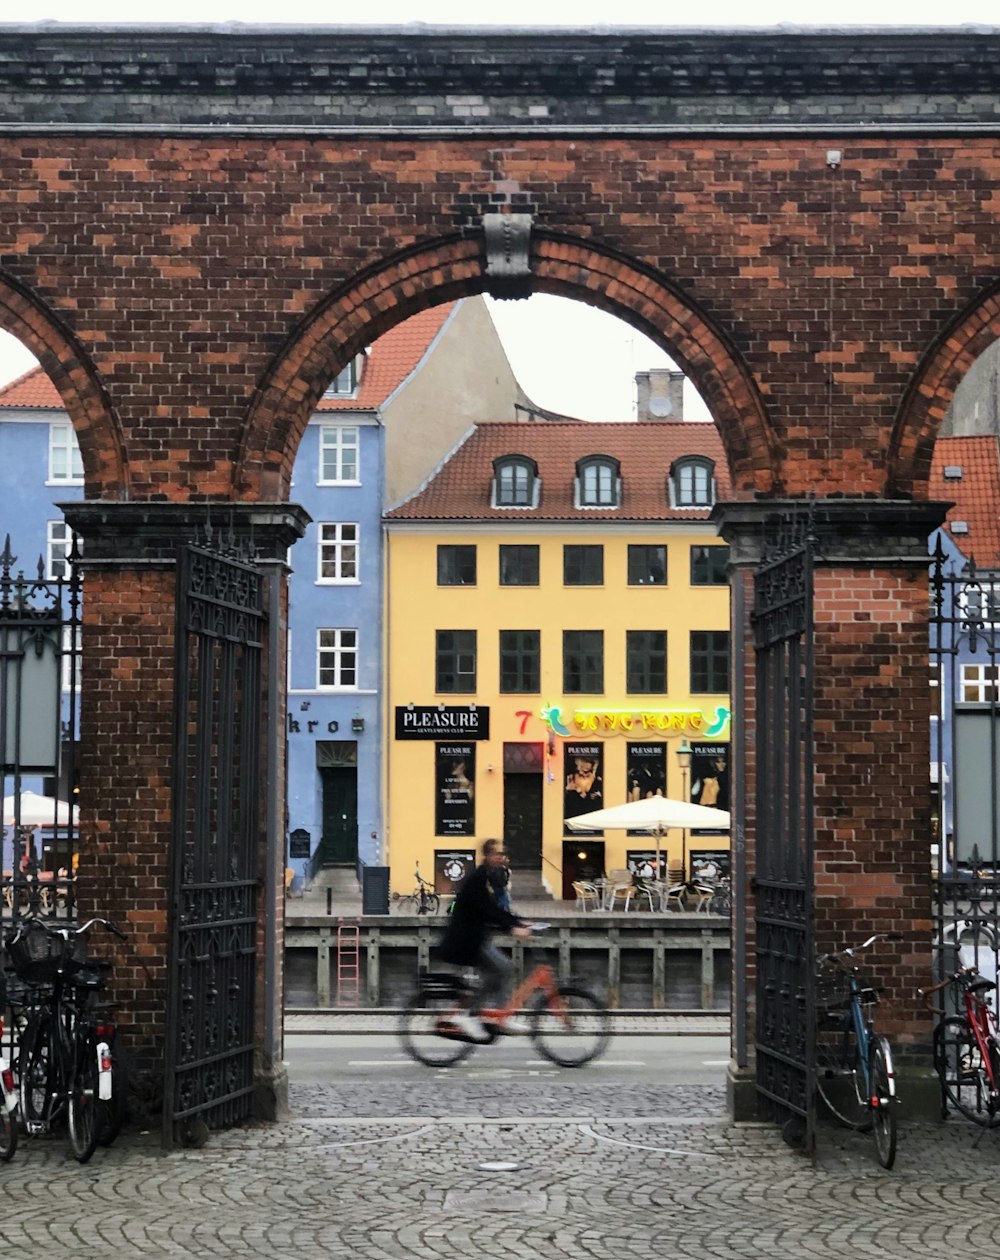 Un homme à vélo à travers une arche de briques